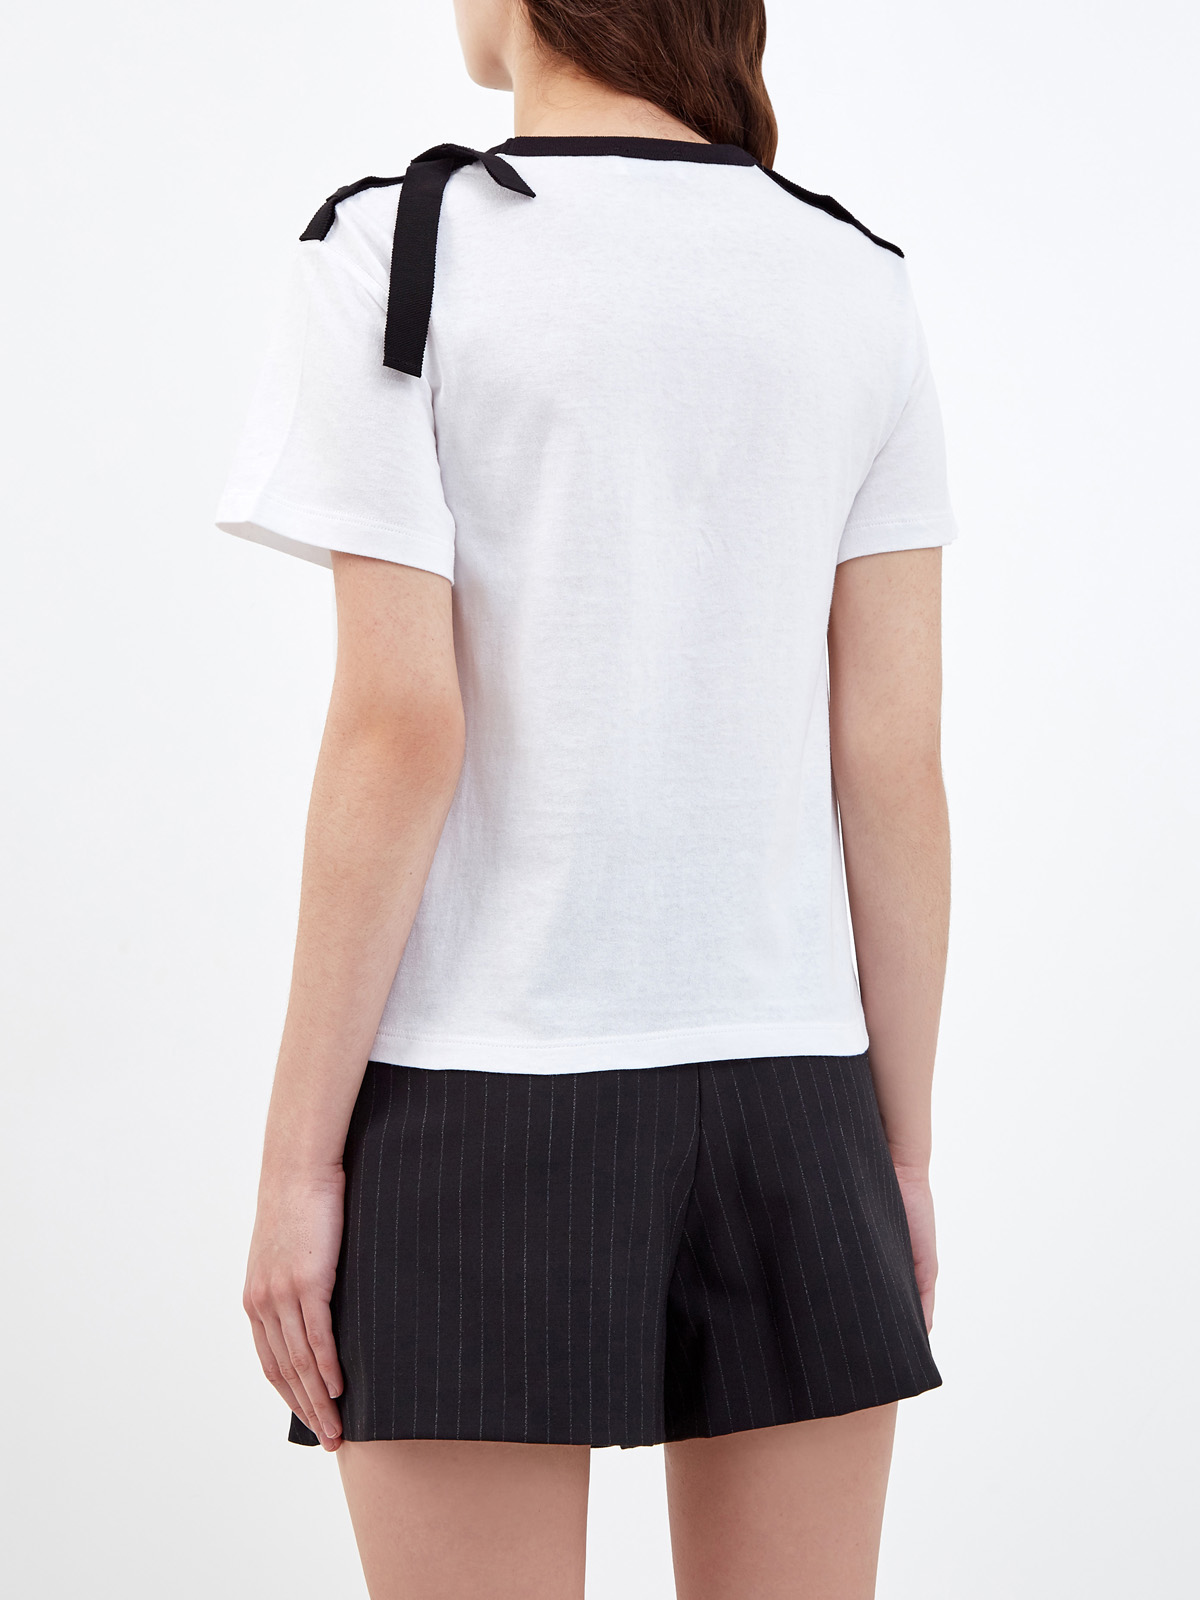 Хлопковая футболка с полупрозрачной вставкой из тюля «пуэн-деспри» REDVALENTINO, цвет белый, размер S;M;XS - фото 4